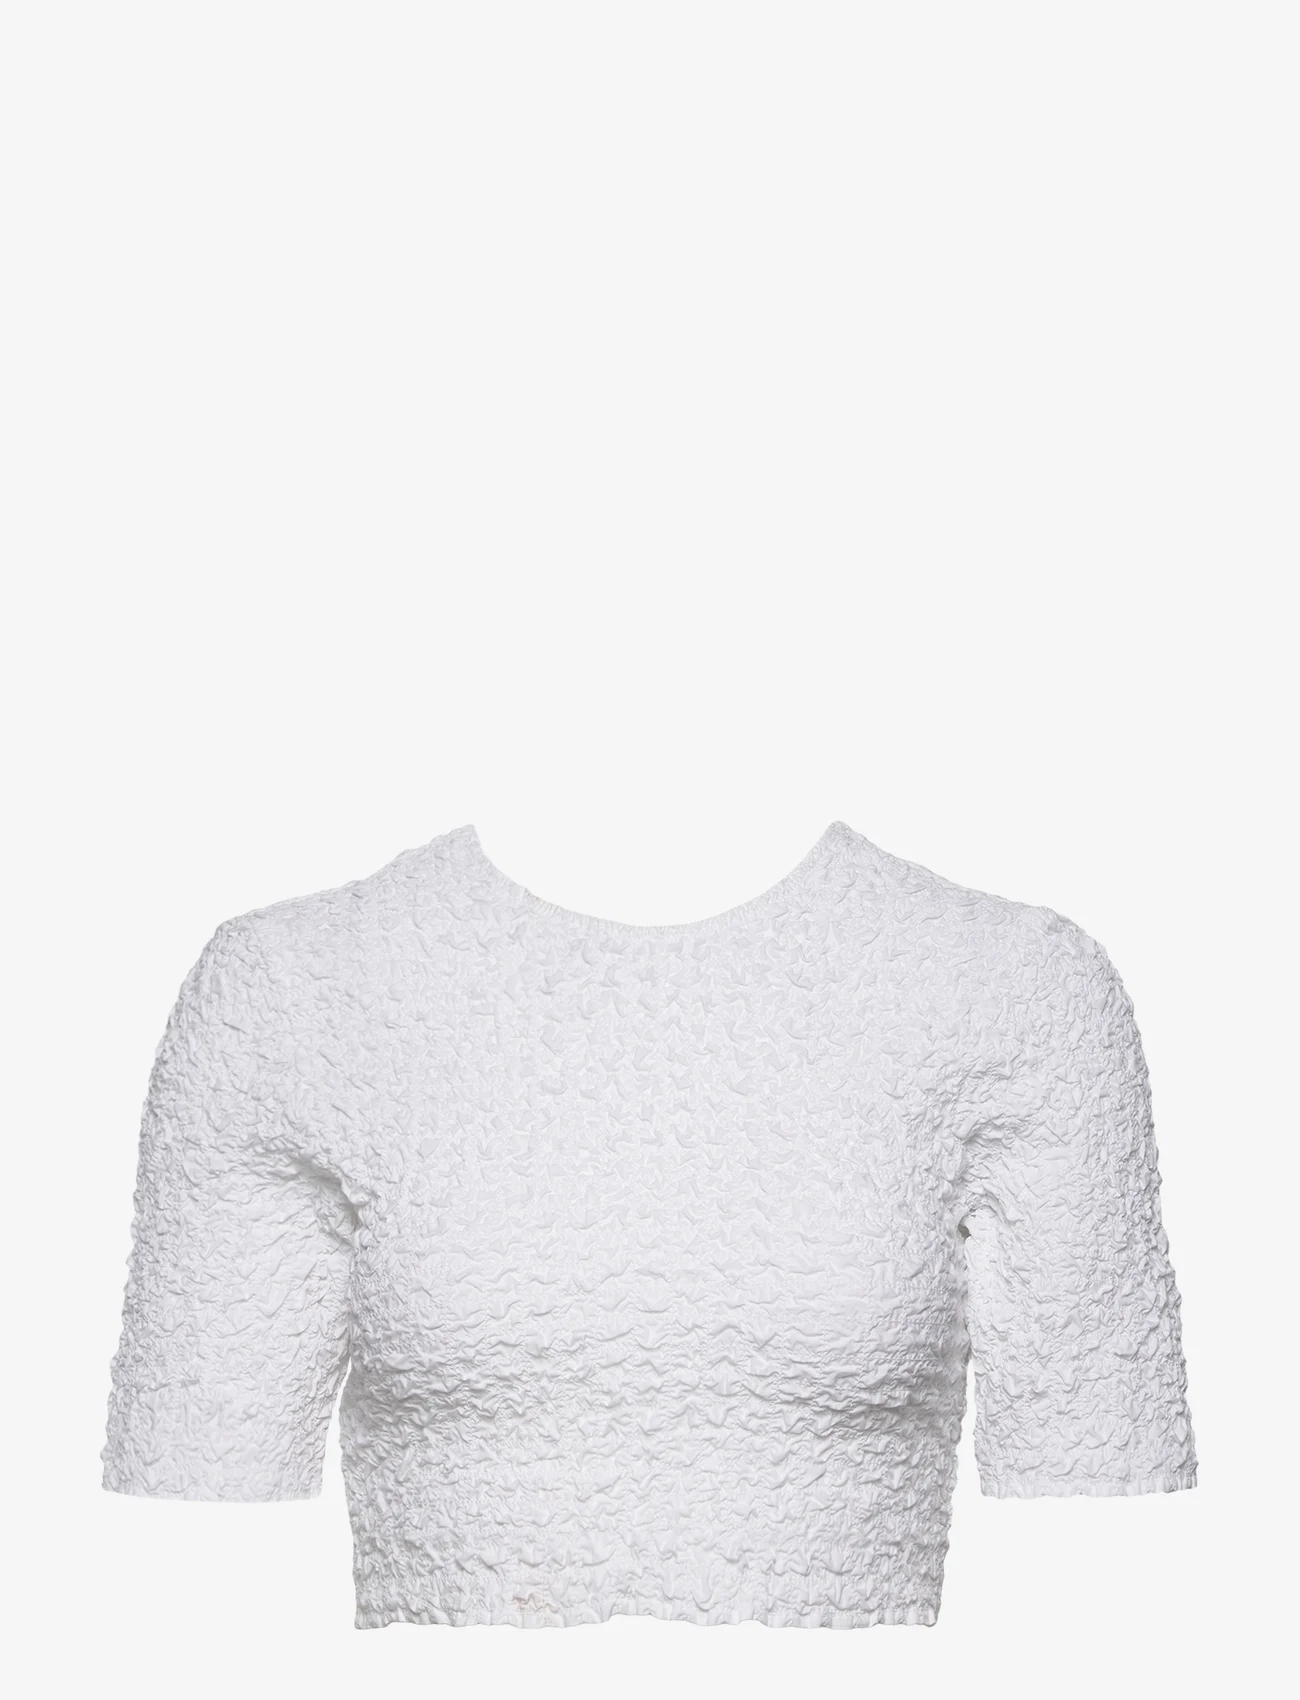 Ganni - Cotton Poplin - t-shirt & tops - bright white - 0